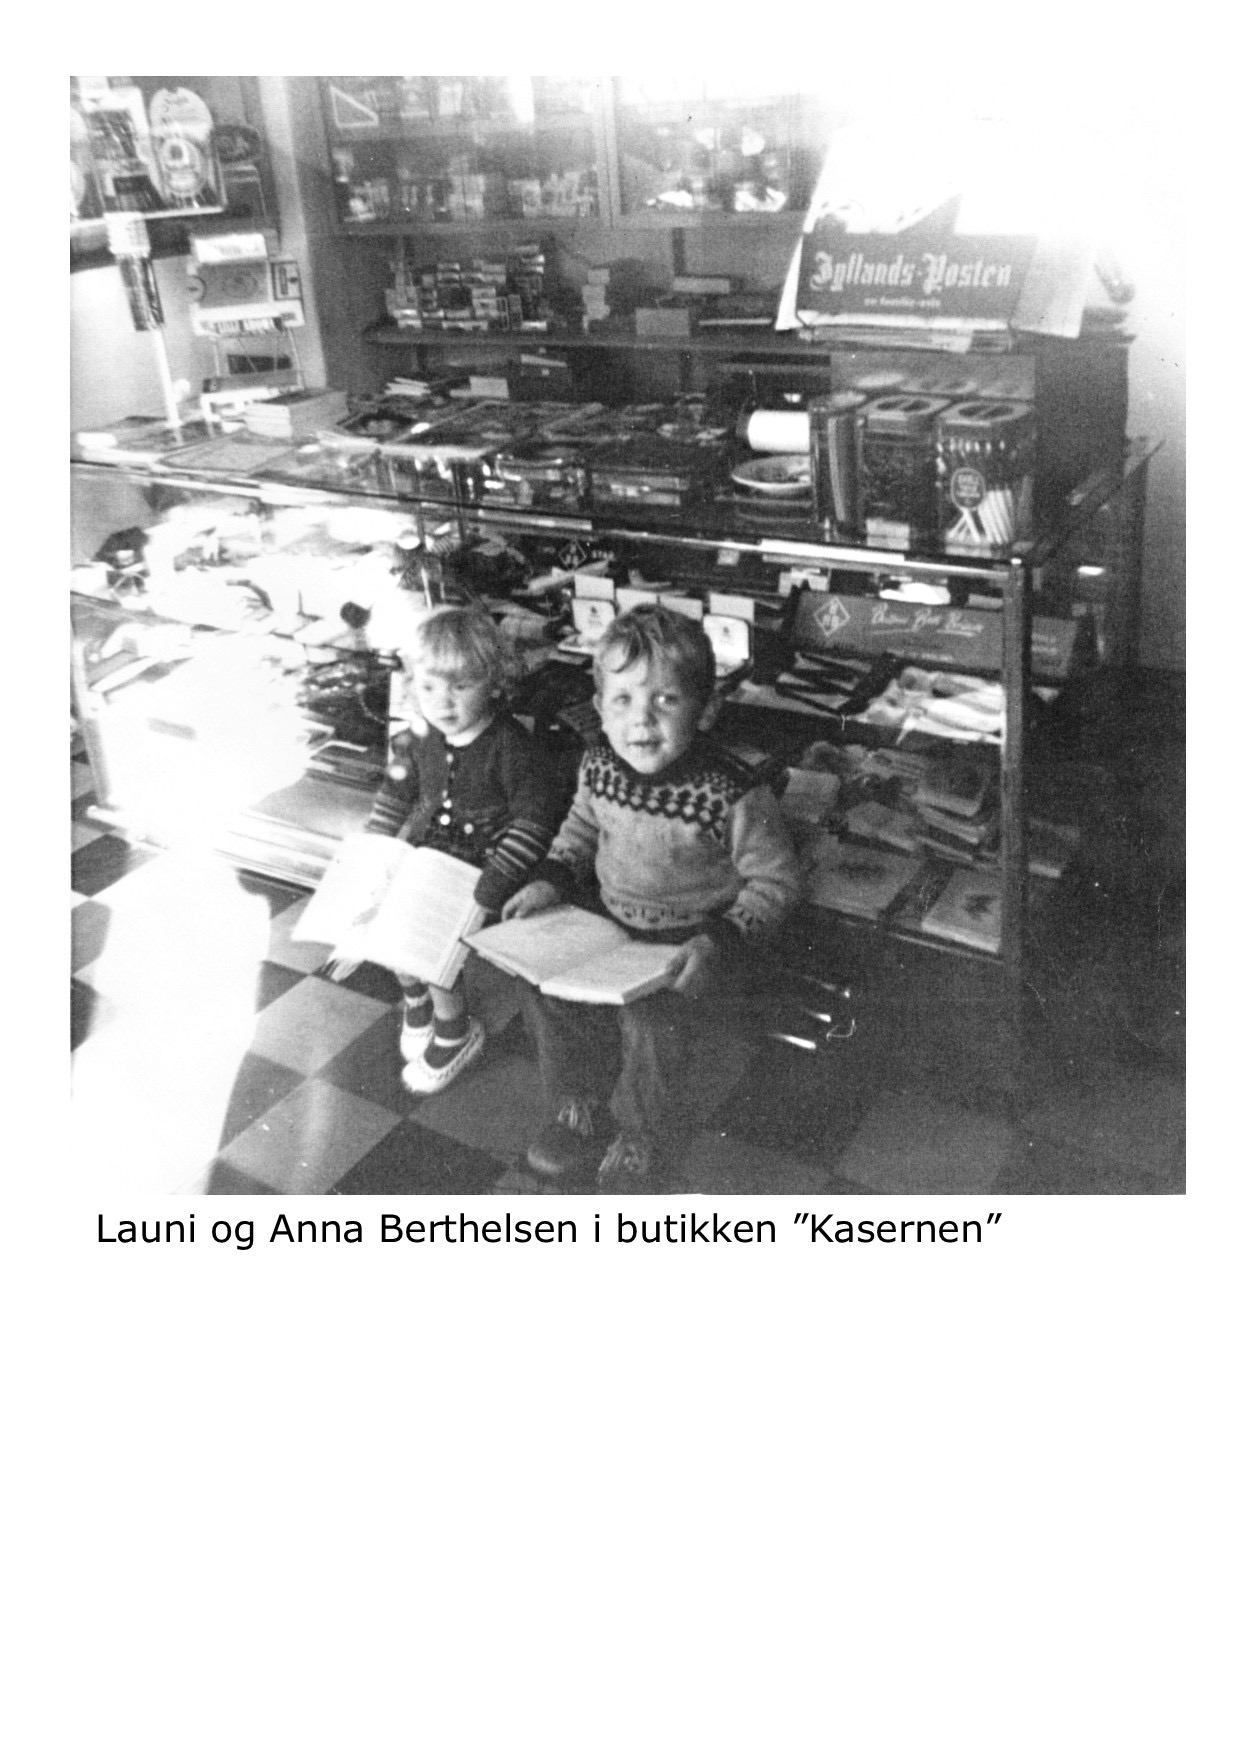 Launi og Anna Bertelsen 